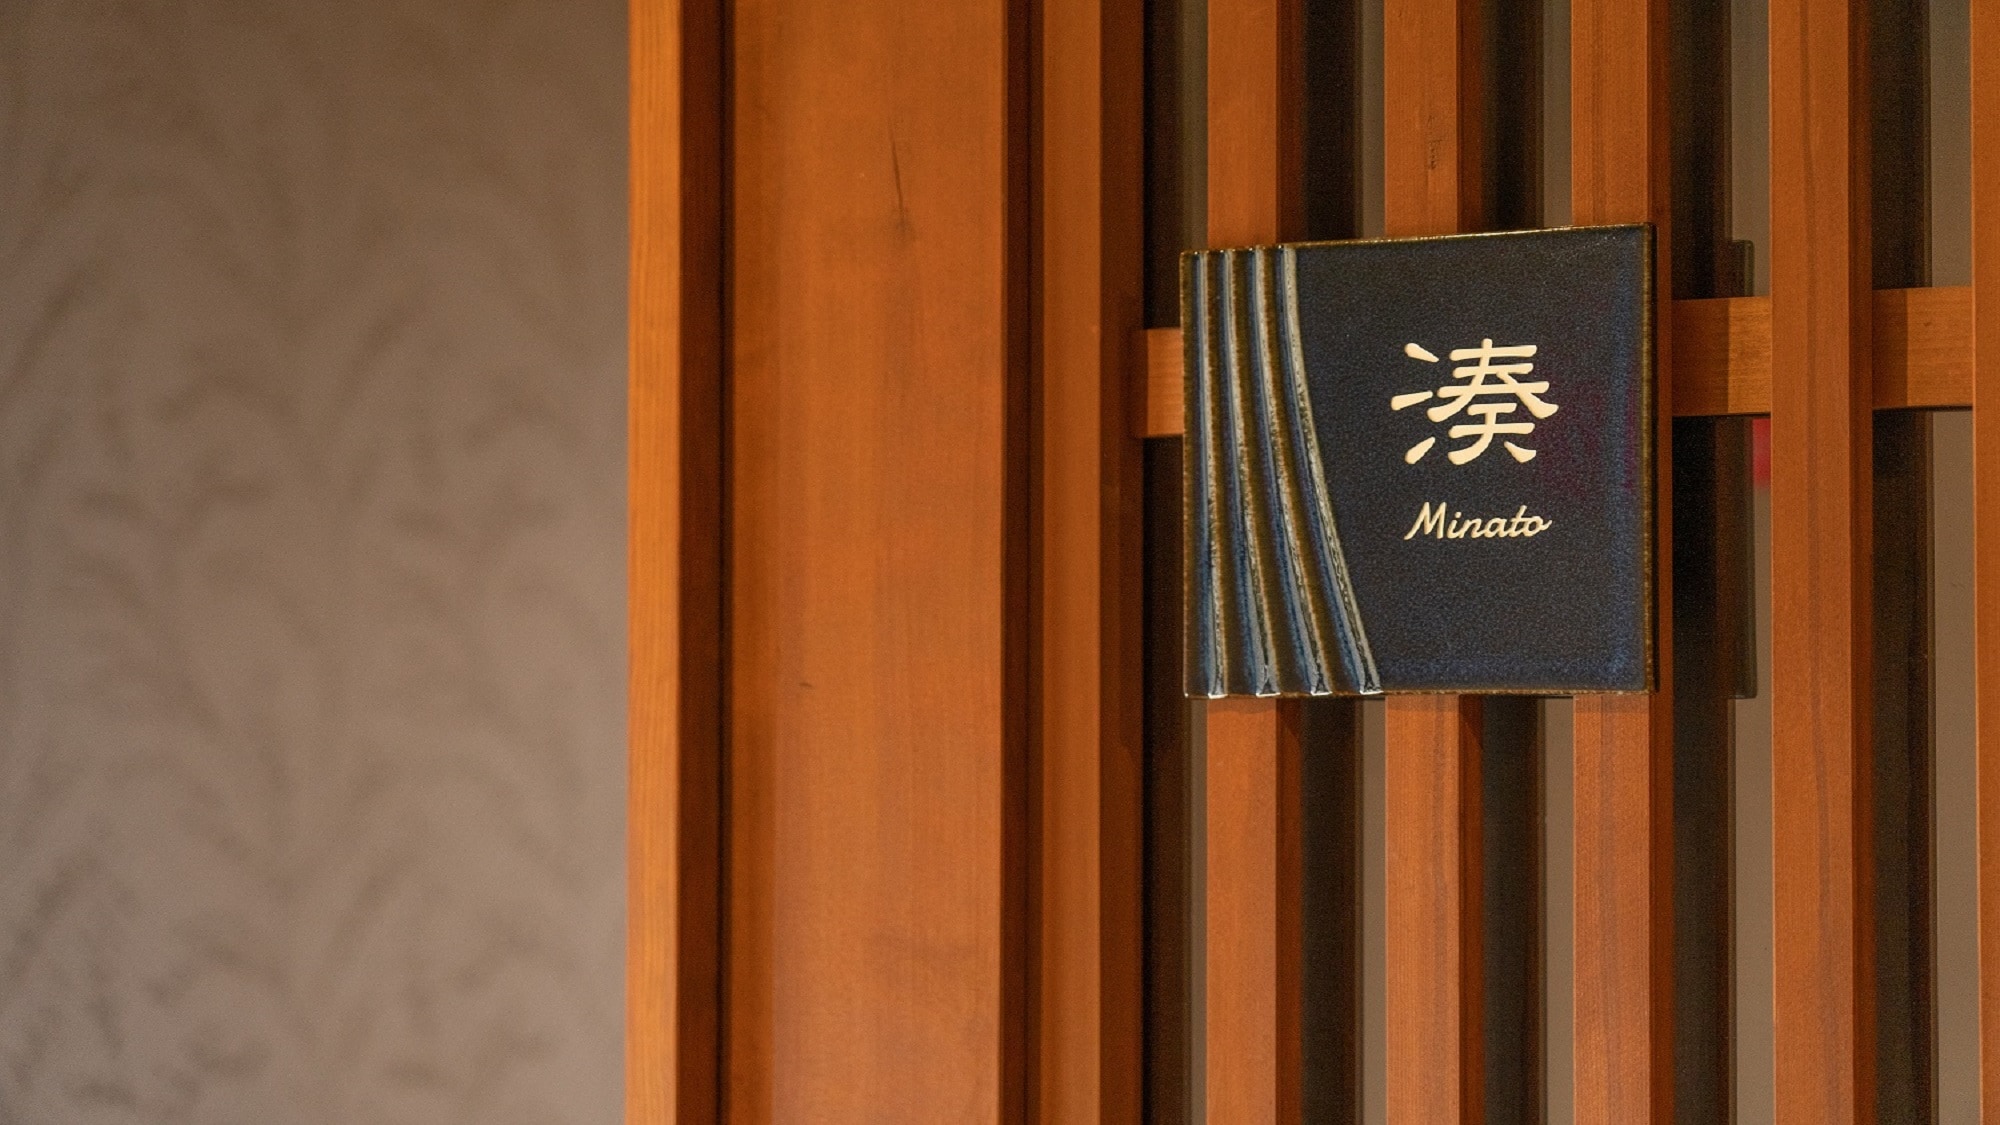 特殊房間“Minato minato”房間入口[禁止吸煙]